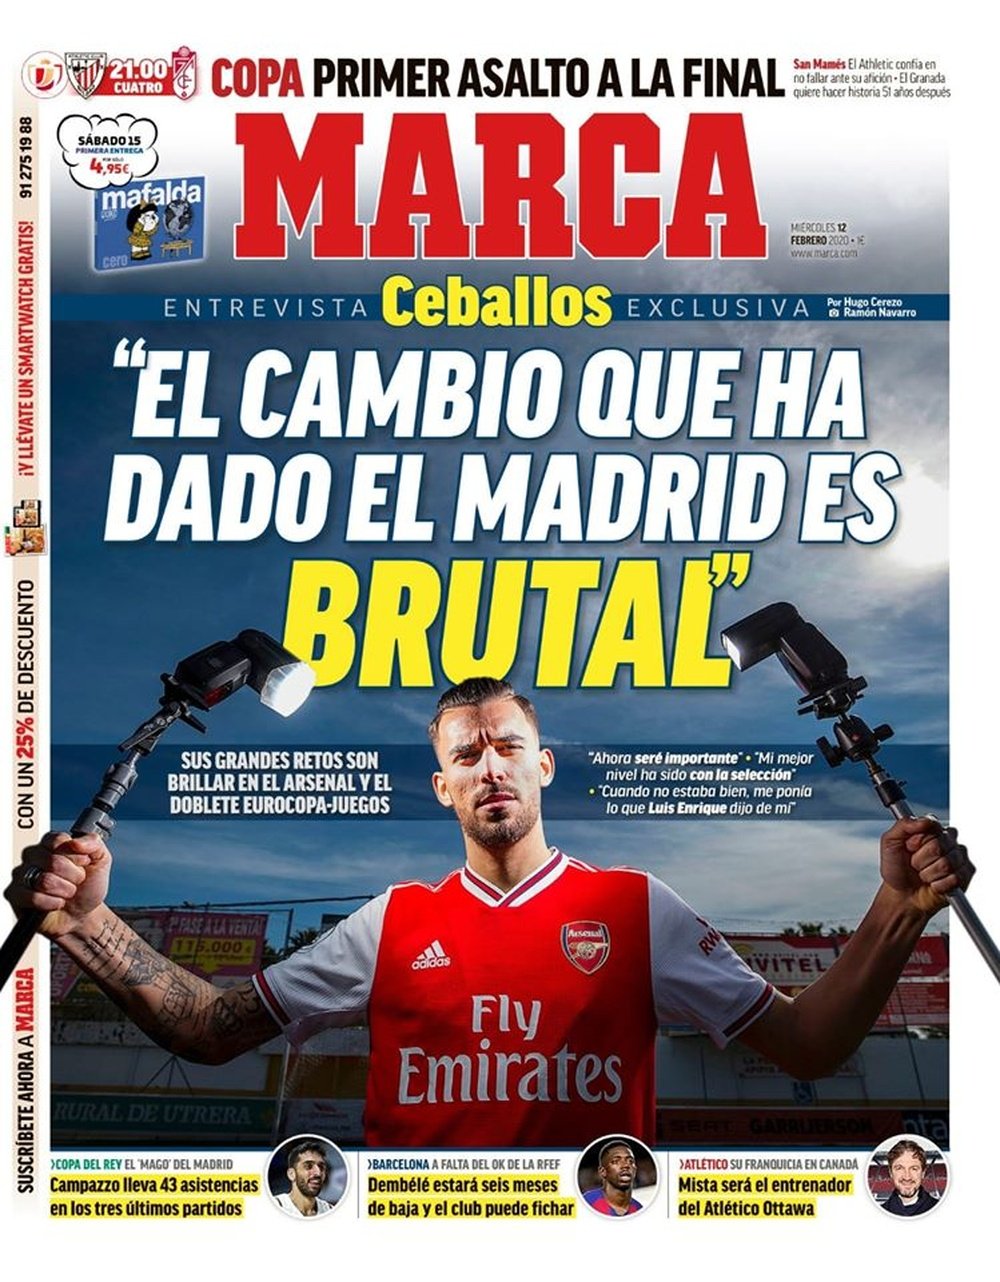 Les Unes des journaux sportifs en Espagne du 12 février 2020. Marca